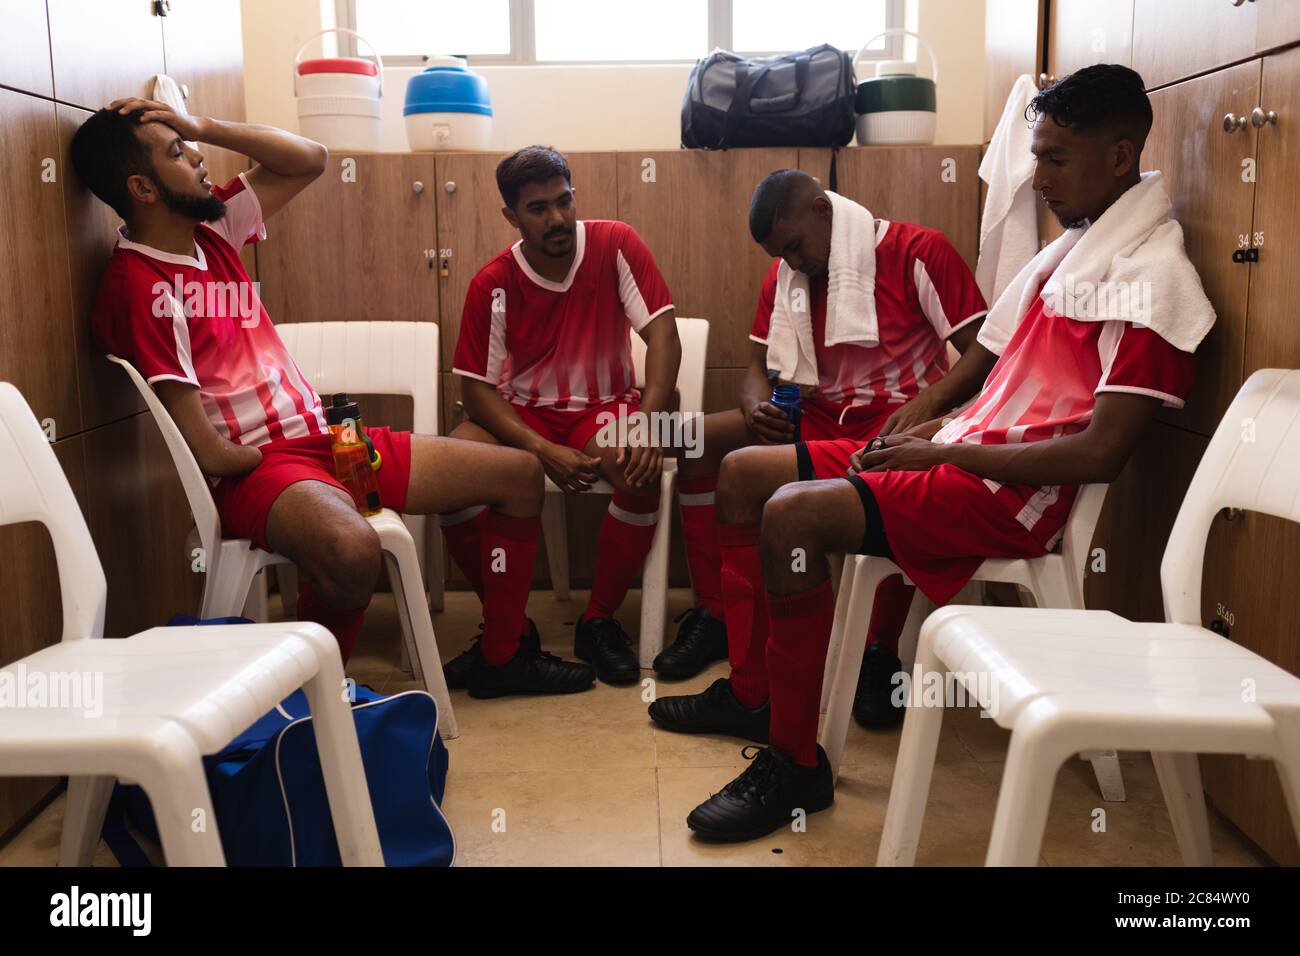 Groupe multiethnique de joueurs de football masculins portant une bande d'équipe assis dans le vestiaire pendant une pause dans le jeu, déçus par la serviette autour de leur Banque D'Images